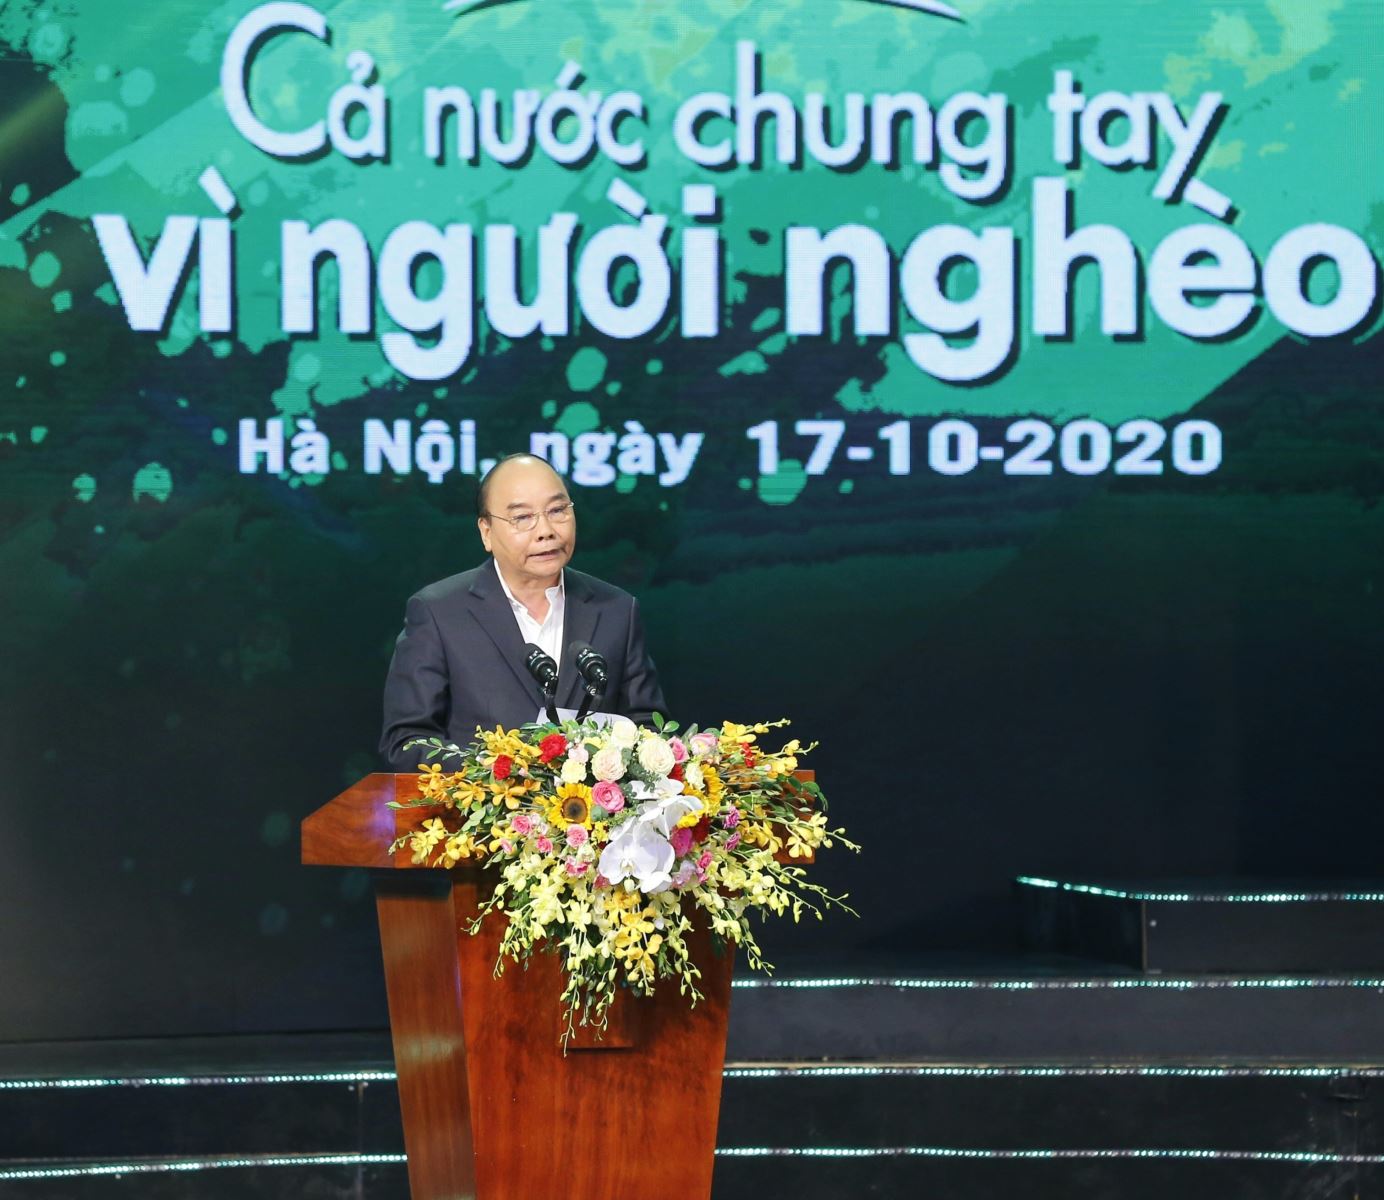 Thủ tướng Chính phủ Nguyễn Xuân Phúc phát biểu tại Chương trình "Cả nước chung tay vì người nghèo" năm 2020.